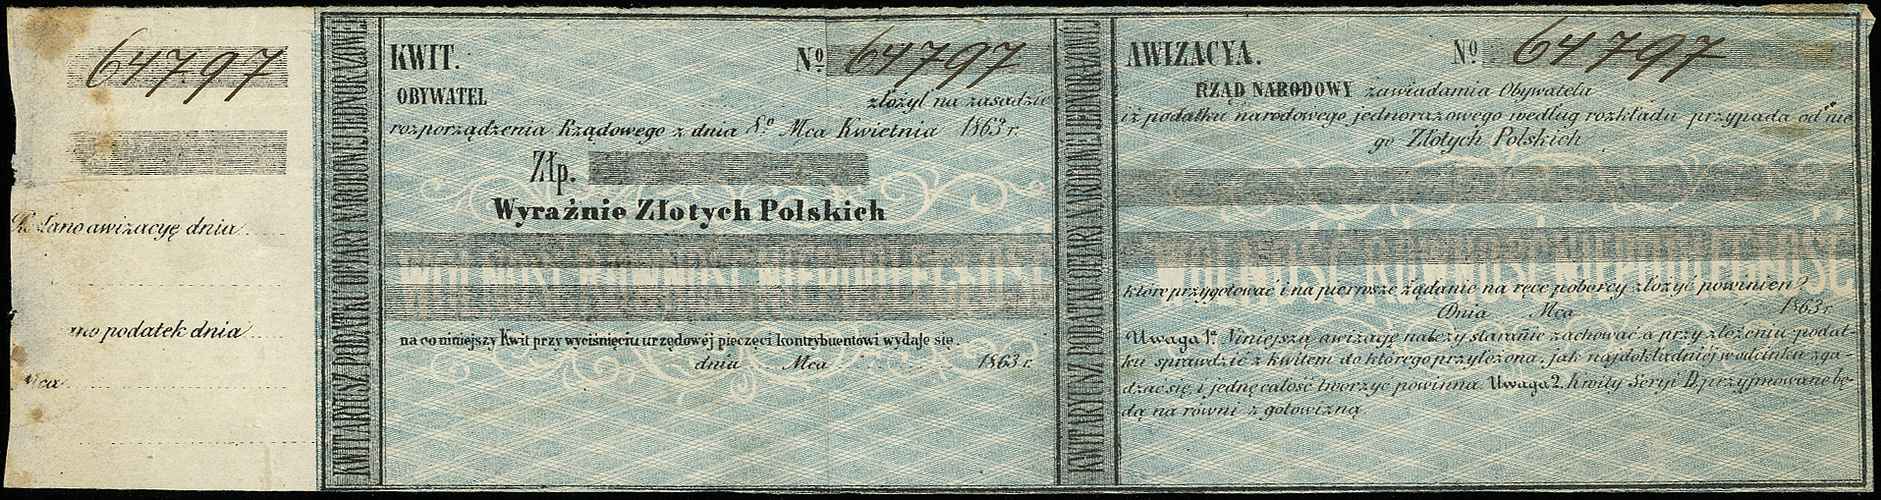 Rząd Narodowy, awizacja z 1863 roku, Lucow 217 (ale nie notuje niewypełnionego blankietu), niewypełniony blankiet, ale z numeracją i stemplem Komitetu Centralnego Narodowego na odwrocie, niewielkie plamki, rzadkie